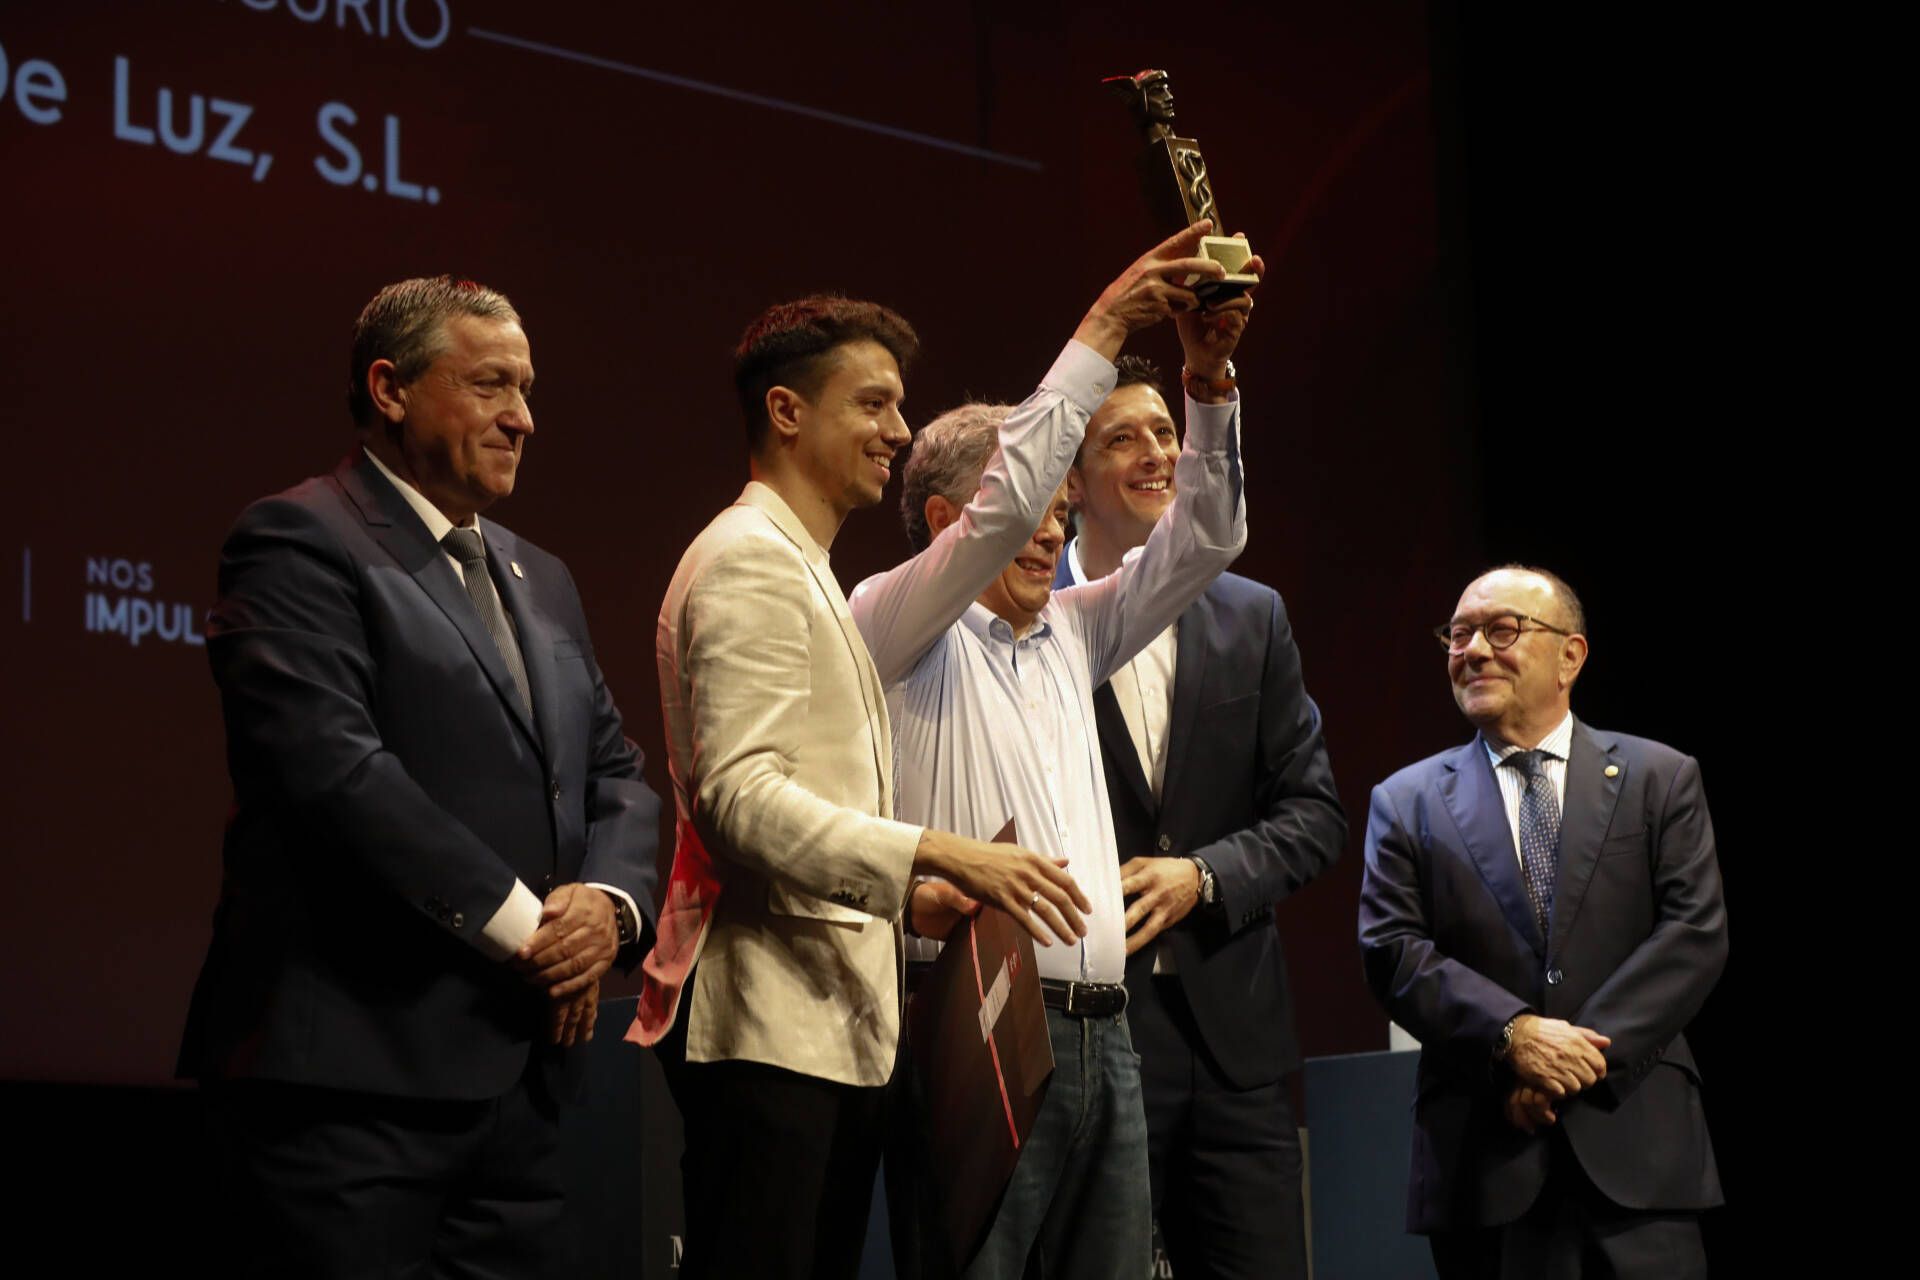 GALERÍA | Premios Mercurio y Vulcano 2024 en Zamora